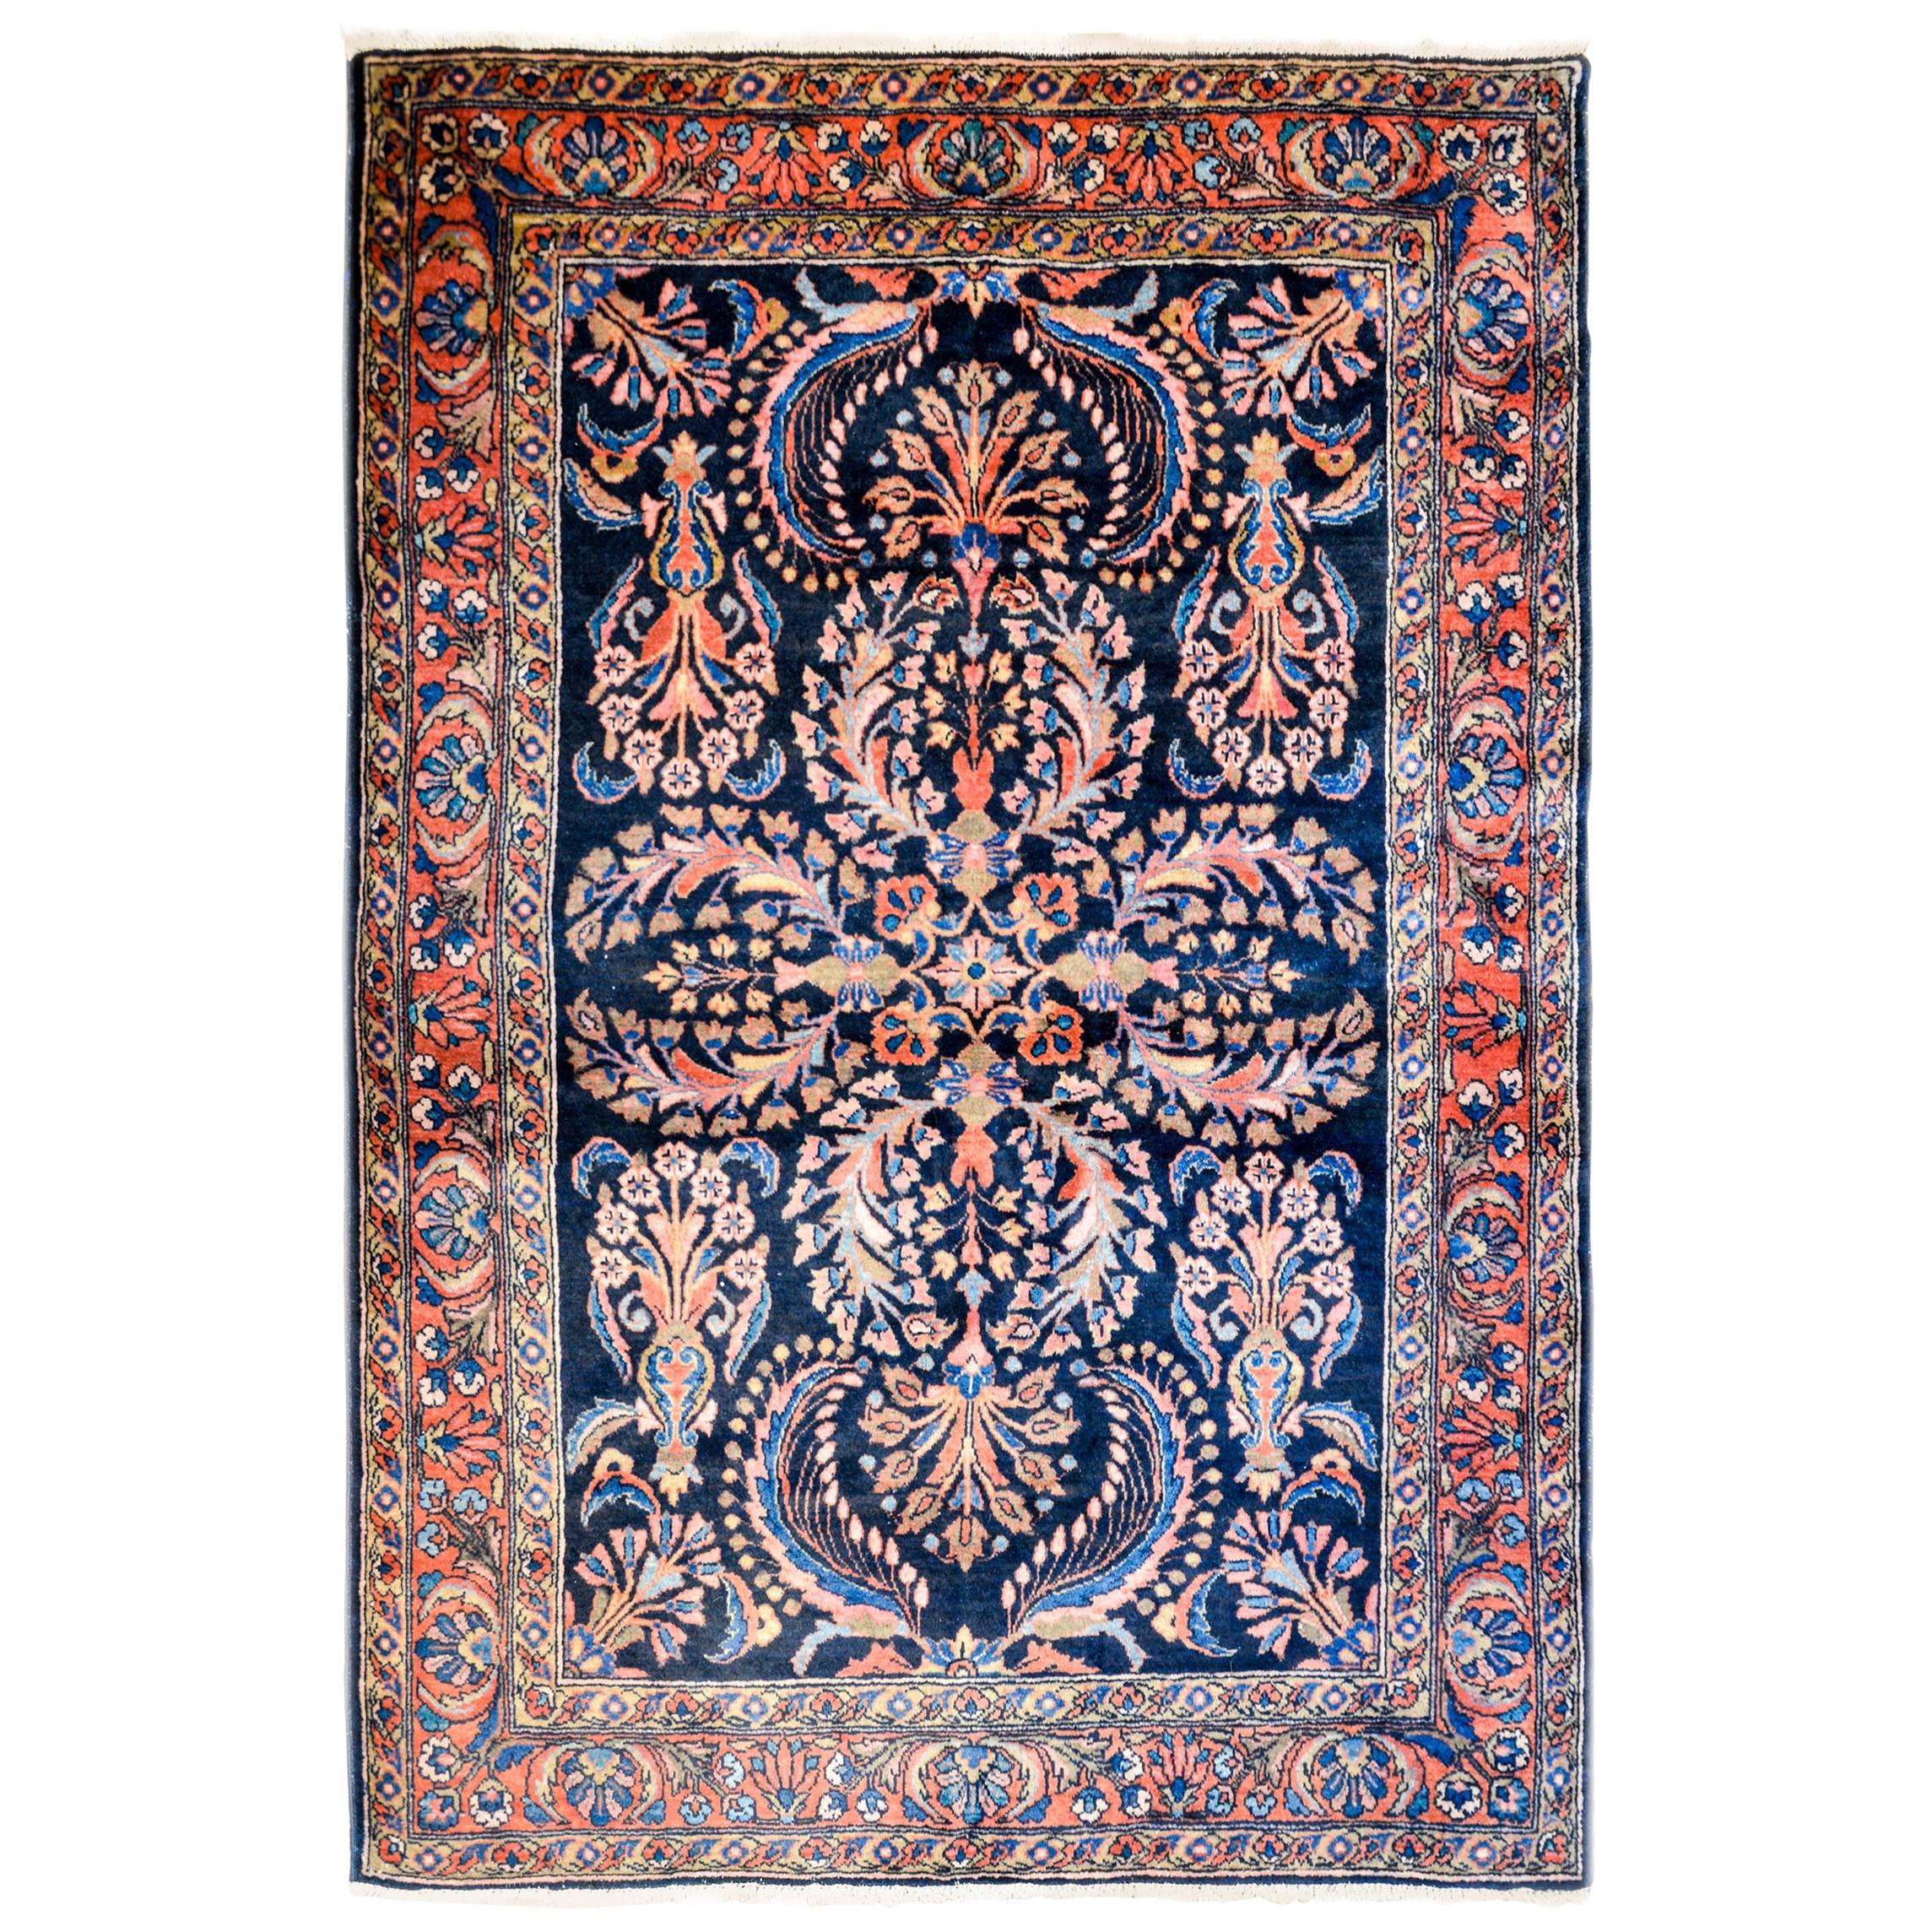 Wunderschöner Lilihan-Teppich aus dem frühen 20. Jahrhundert